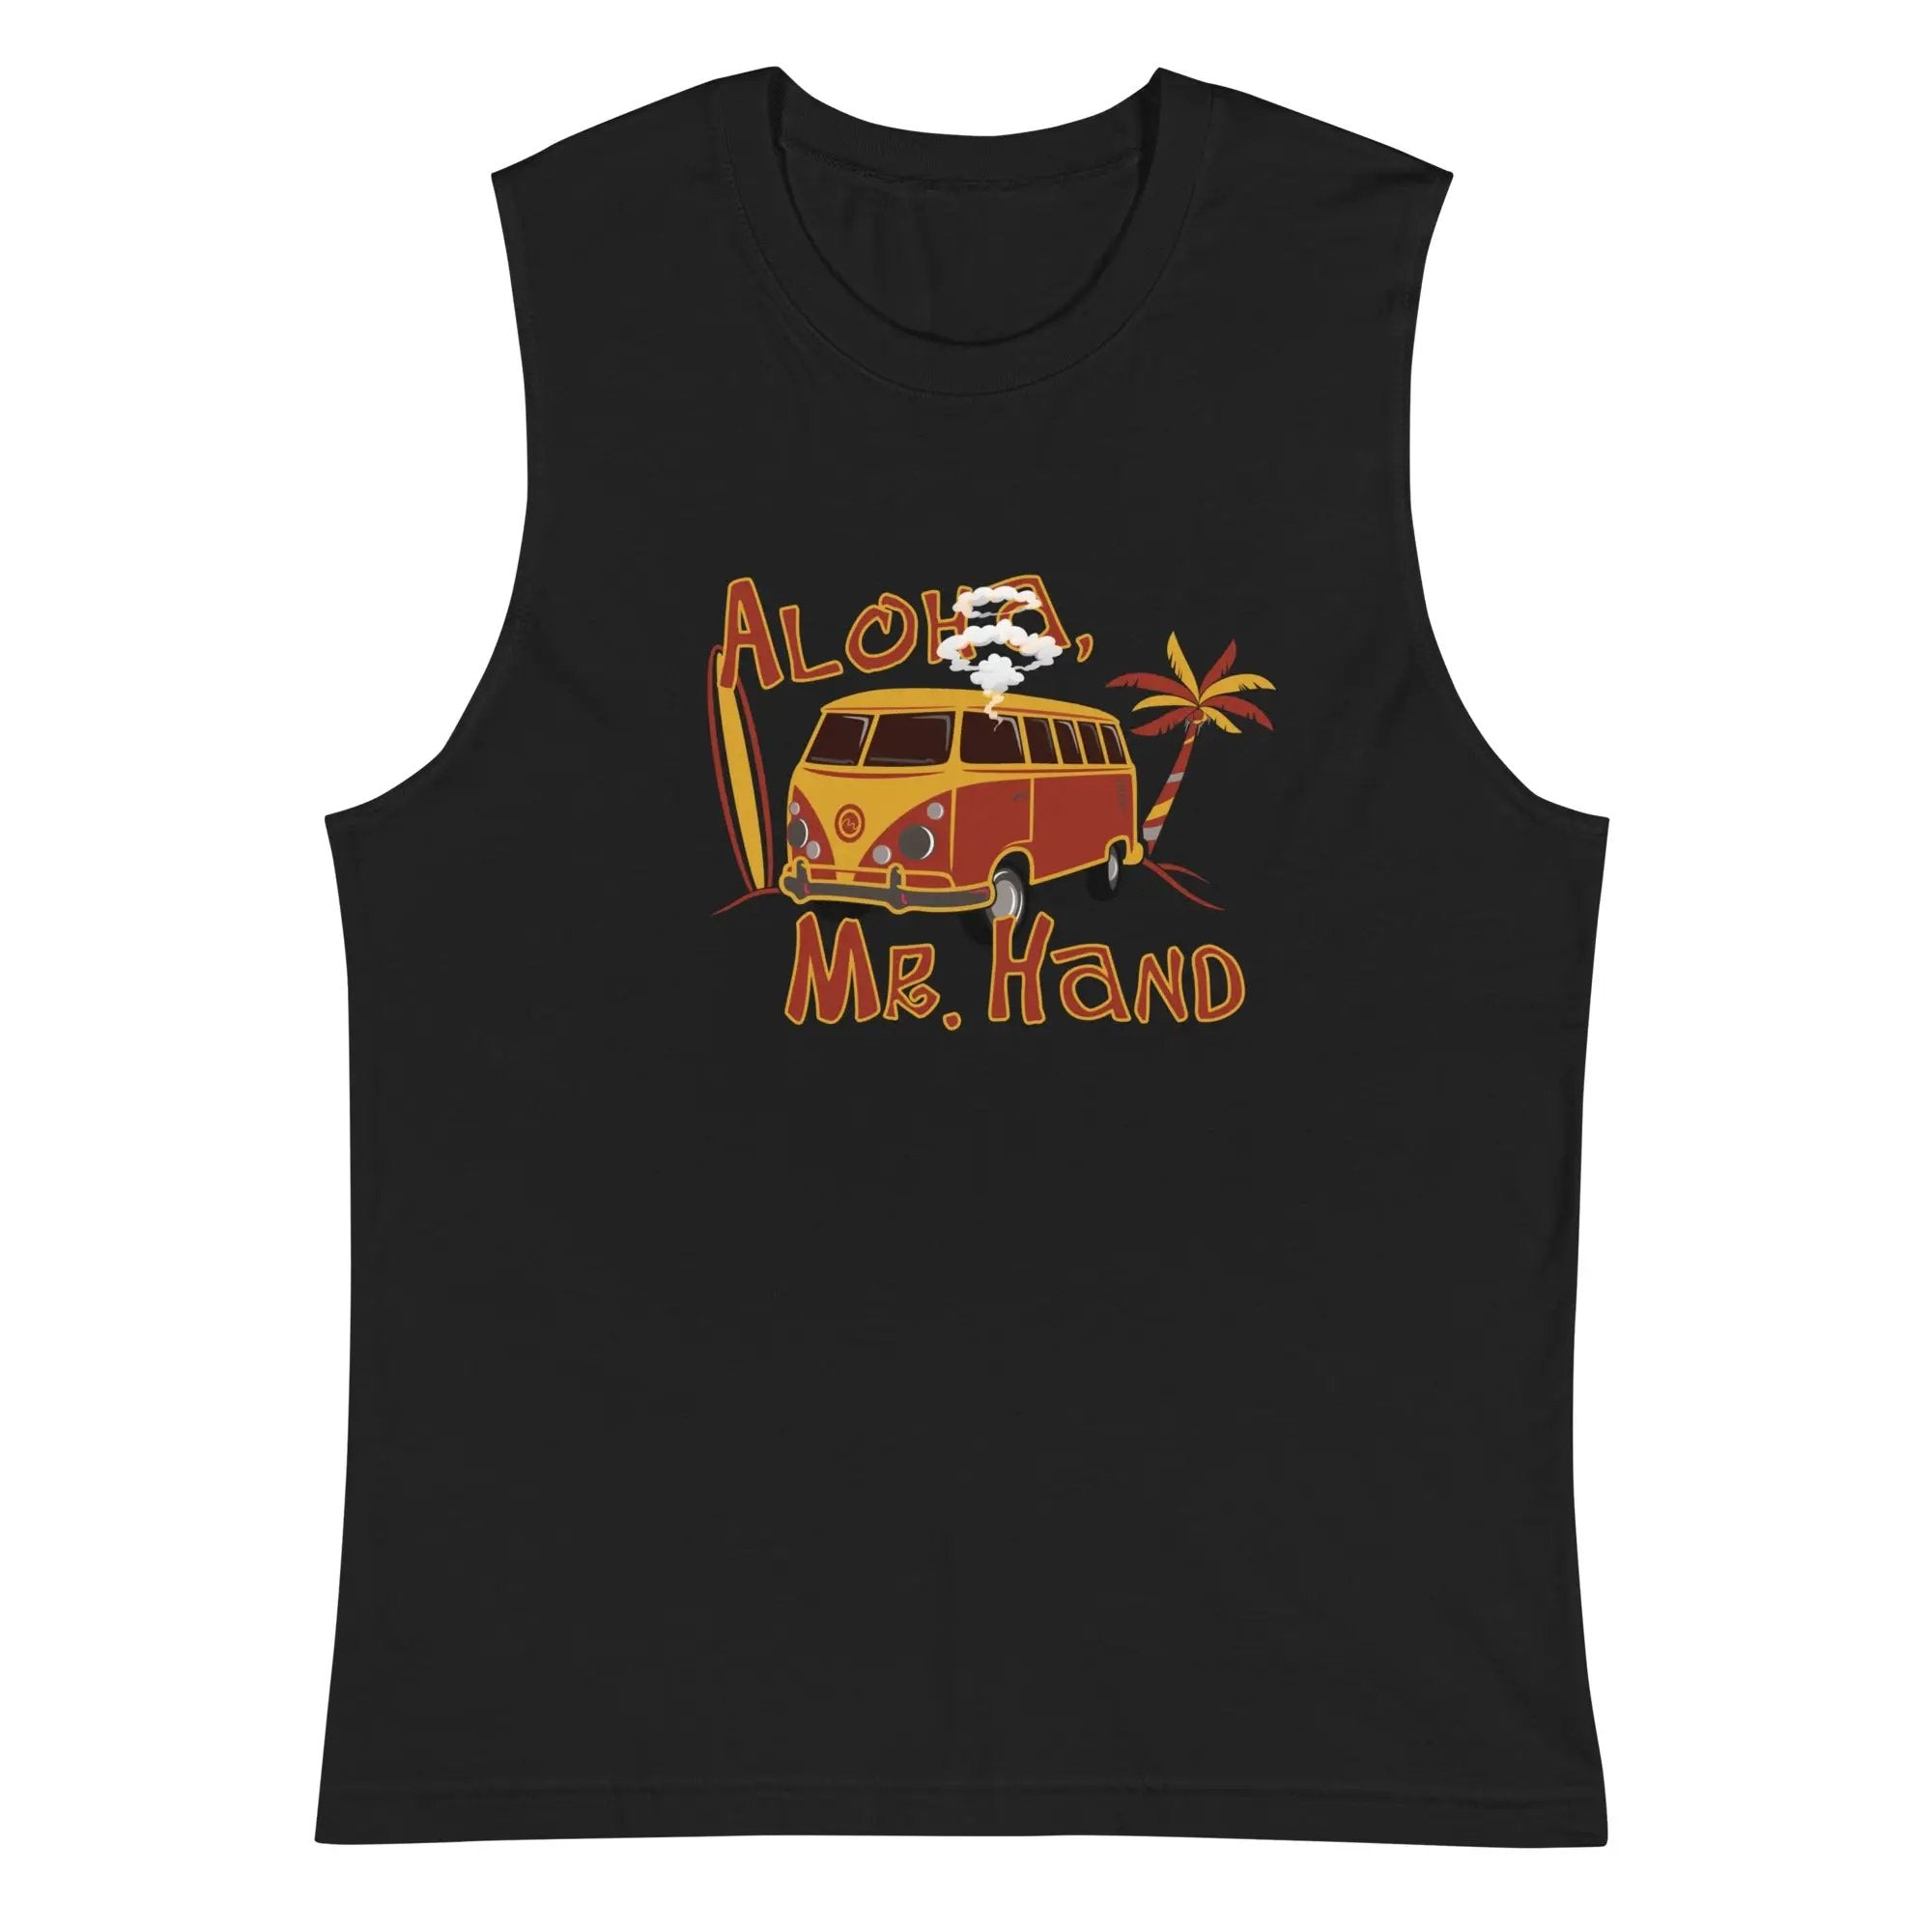 Aloha Mr. Hand! Muscle Shirt